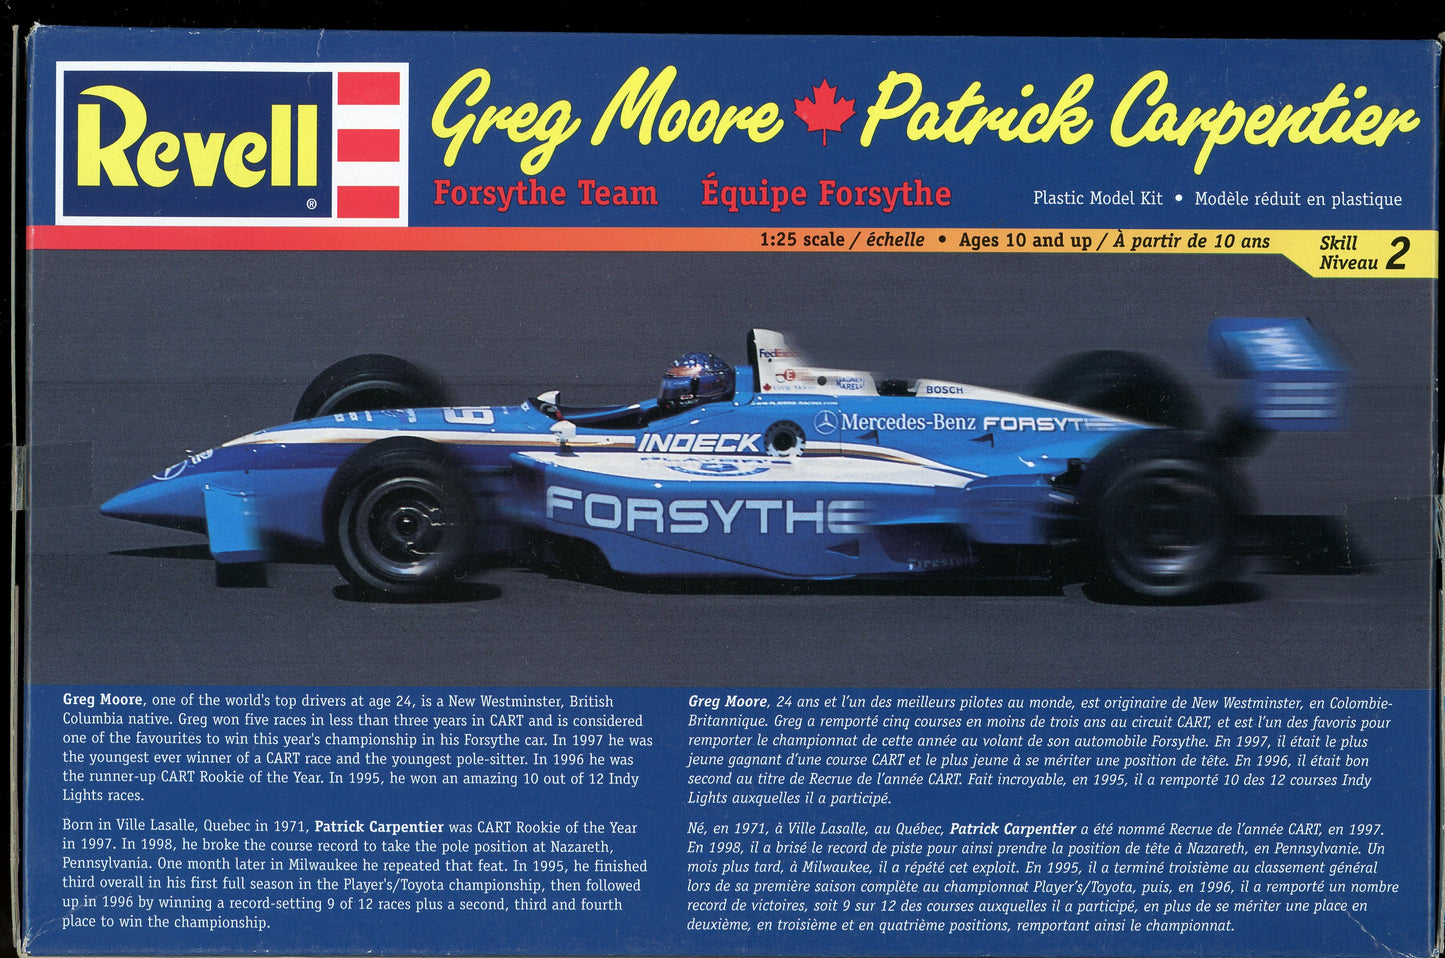 1999 Revell Greg Moore Patrick Carpentier Forsythe Team Plastic Model Kit